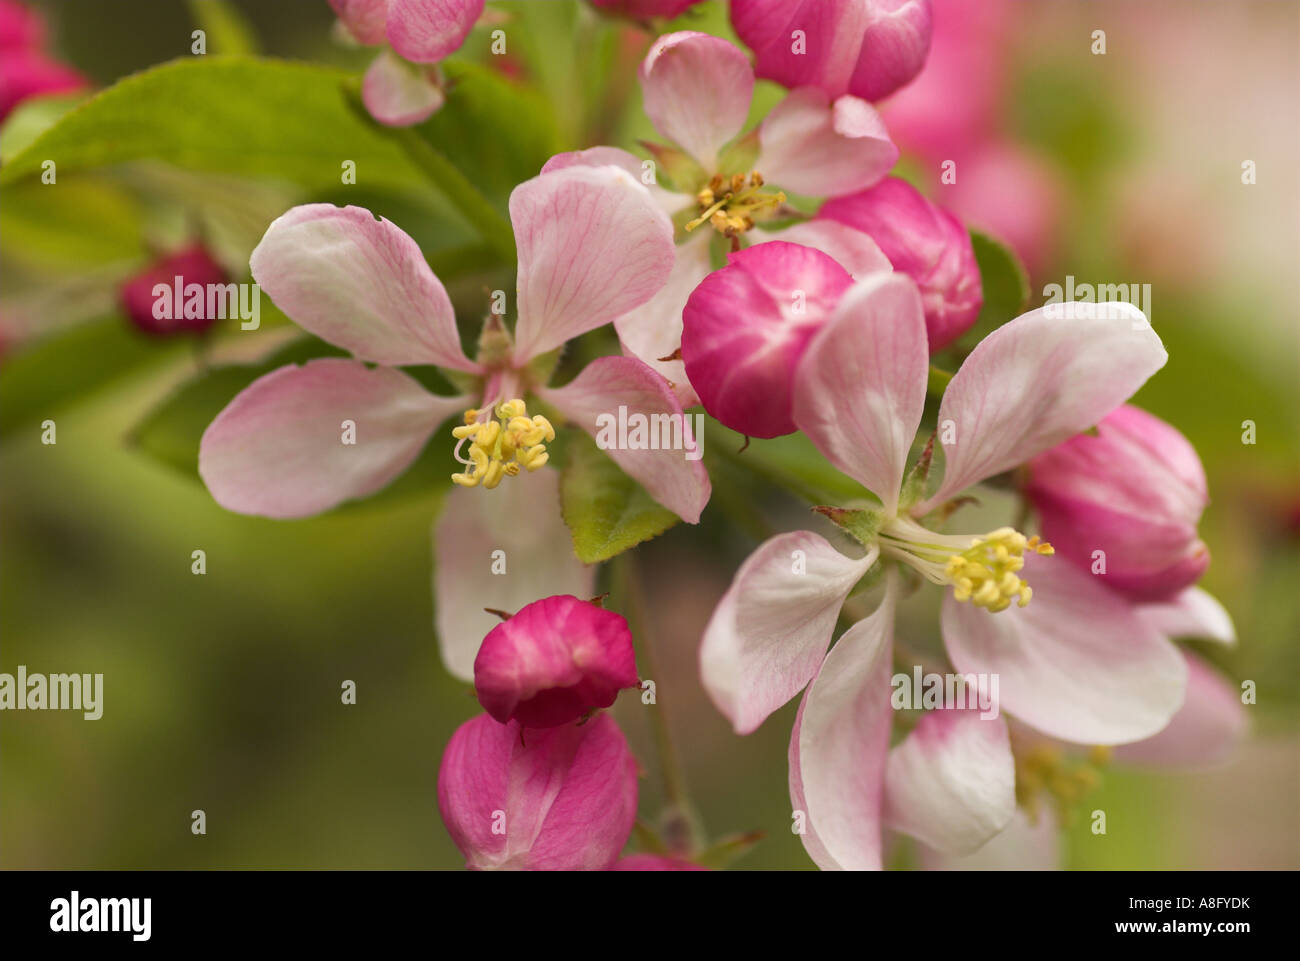 Apple blossom : May 2007. Stock Photo